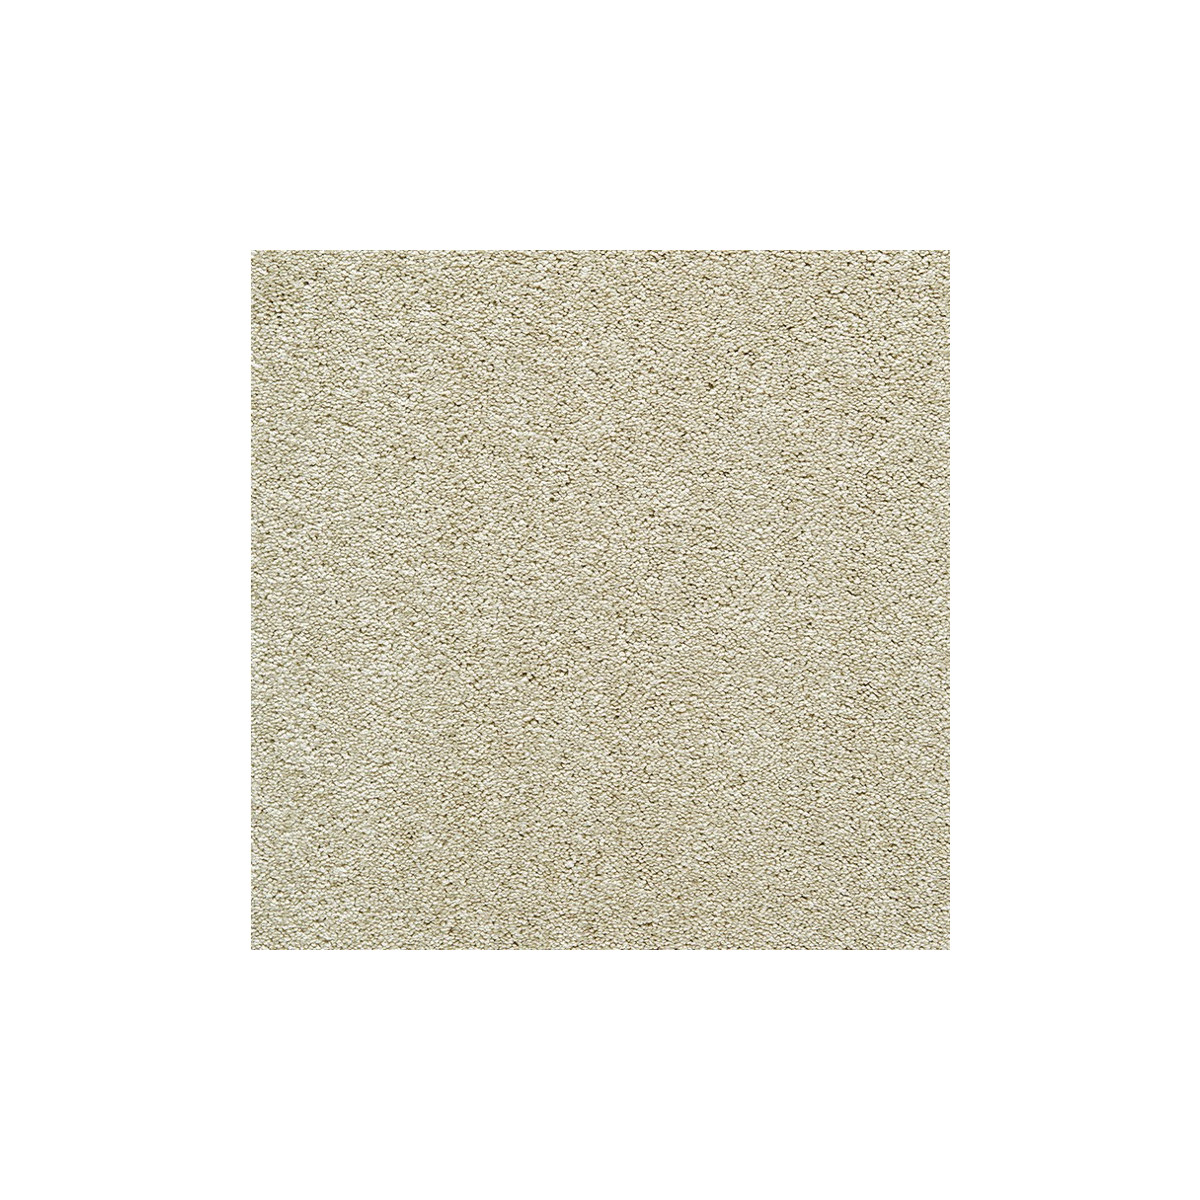 Metrážový koberec Platino 7948